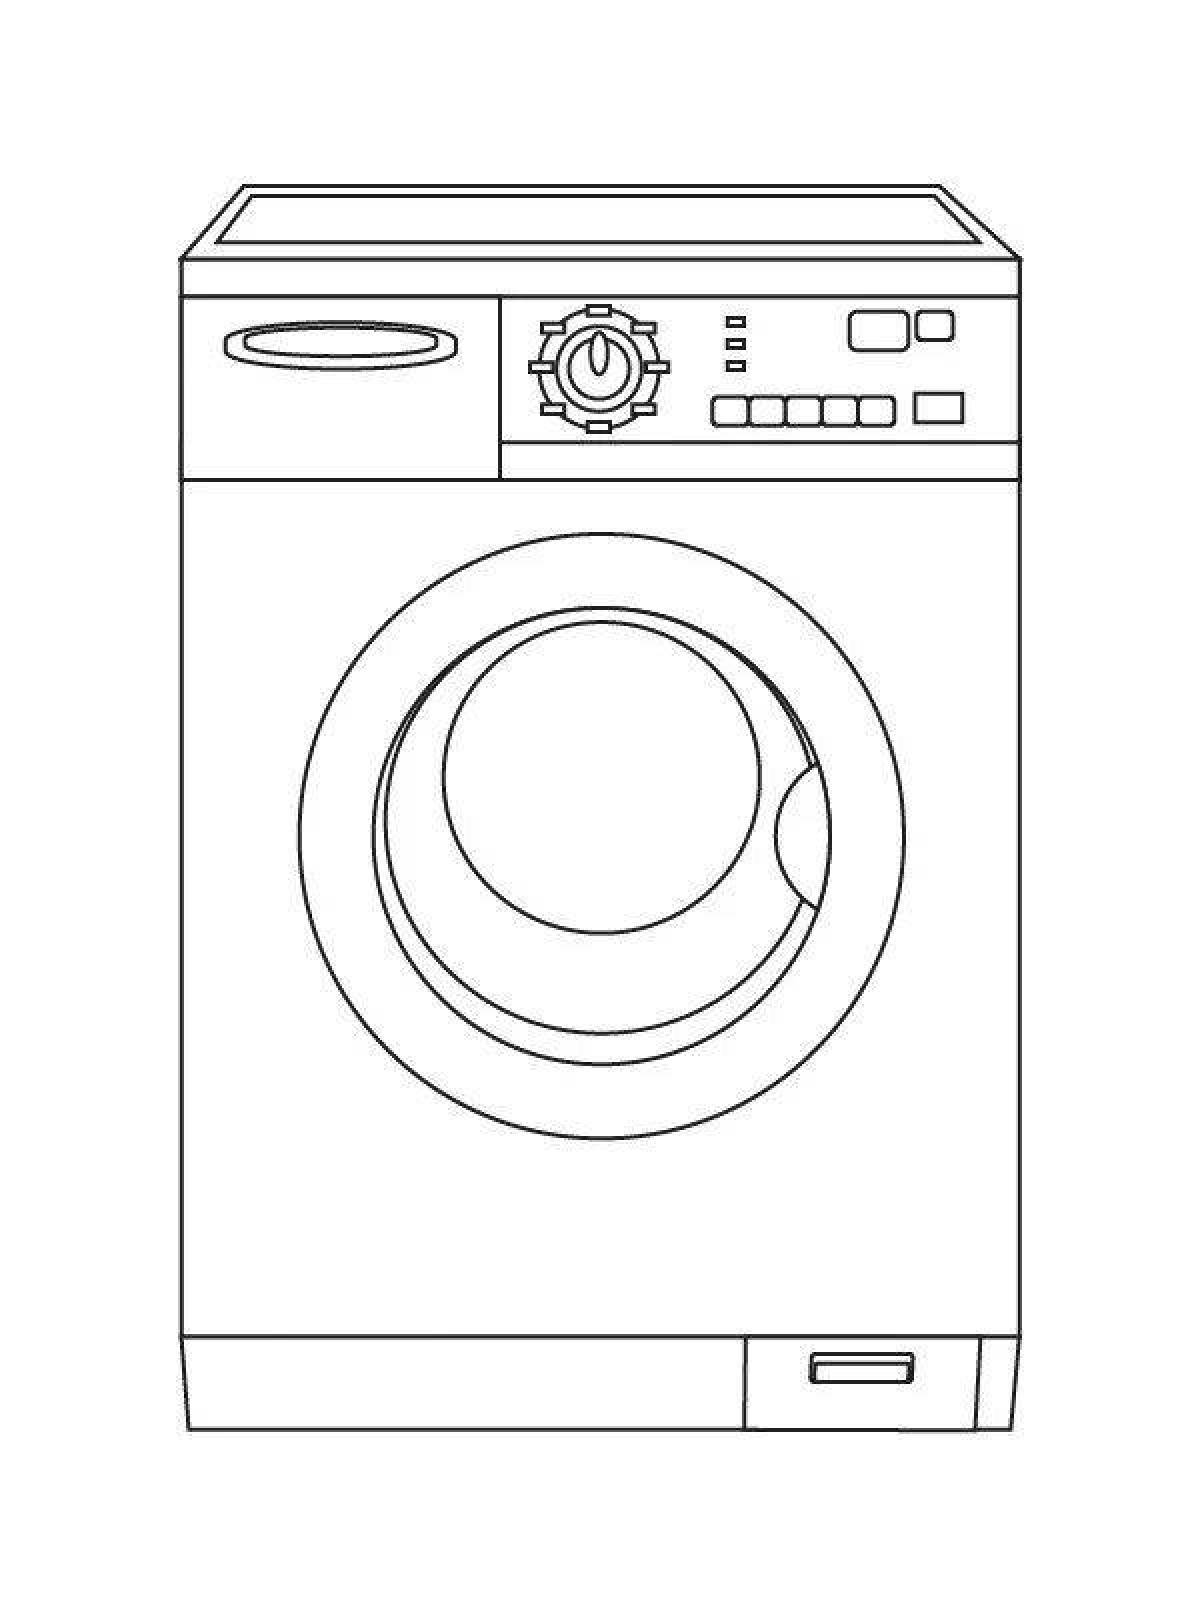 Coloring page stylish washing machine